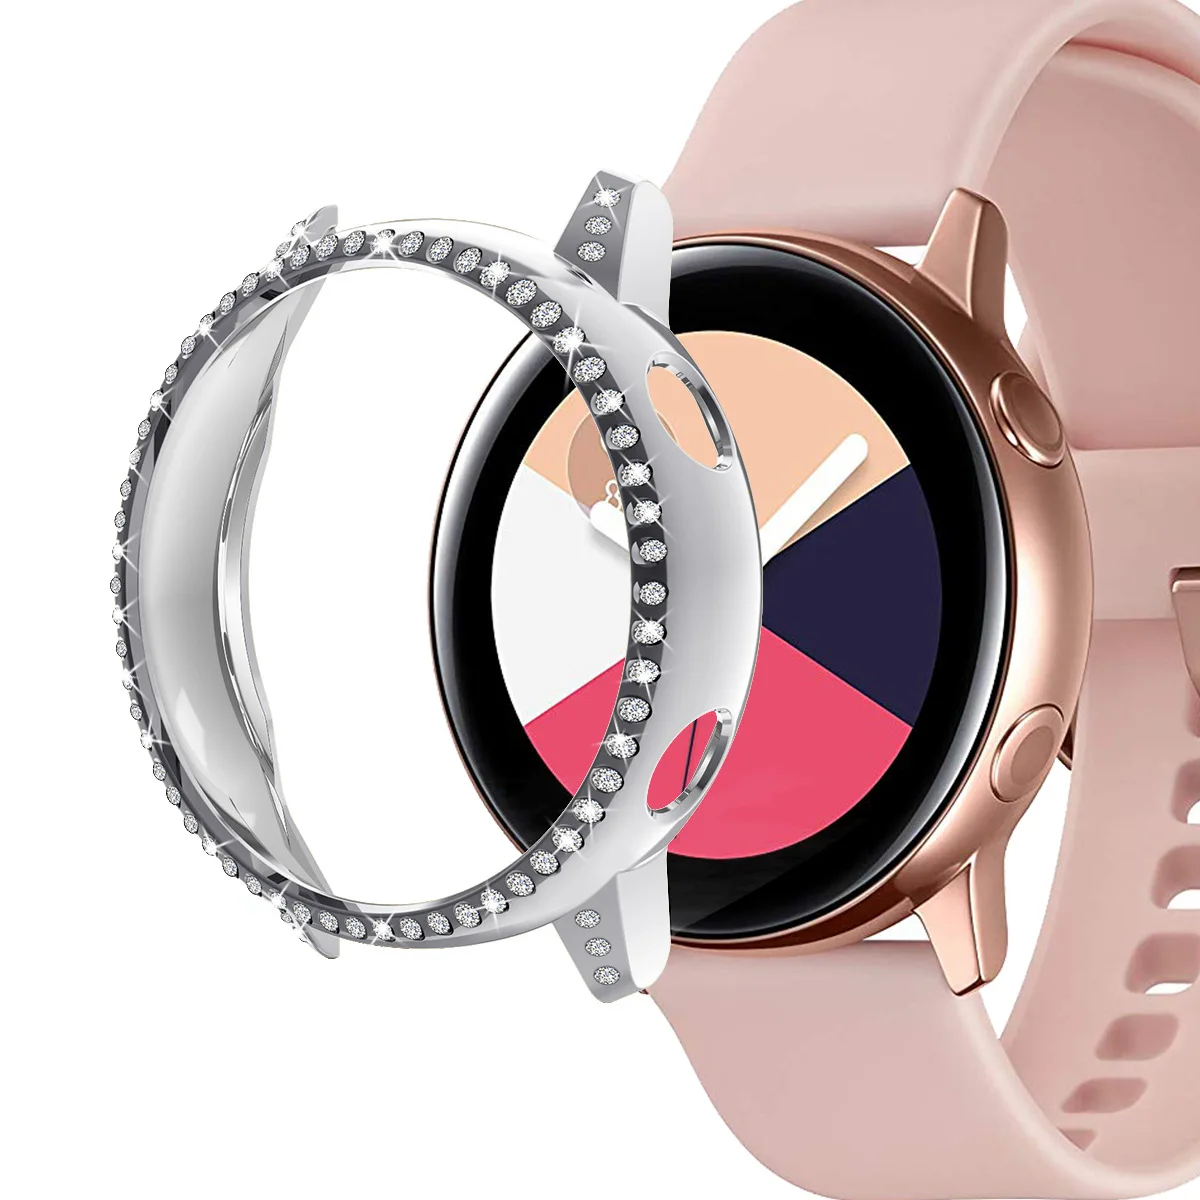 40 мм PC чехол-Бампер Защитный чехол для samsung Galaxy Watch Active для женщин и девушек блестящий чехол для часов с кристаллами - Цвет: Silver